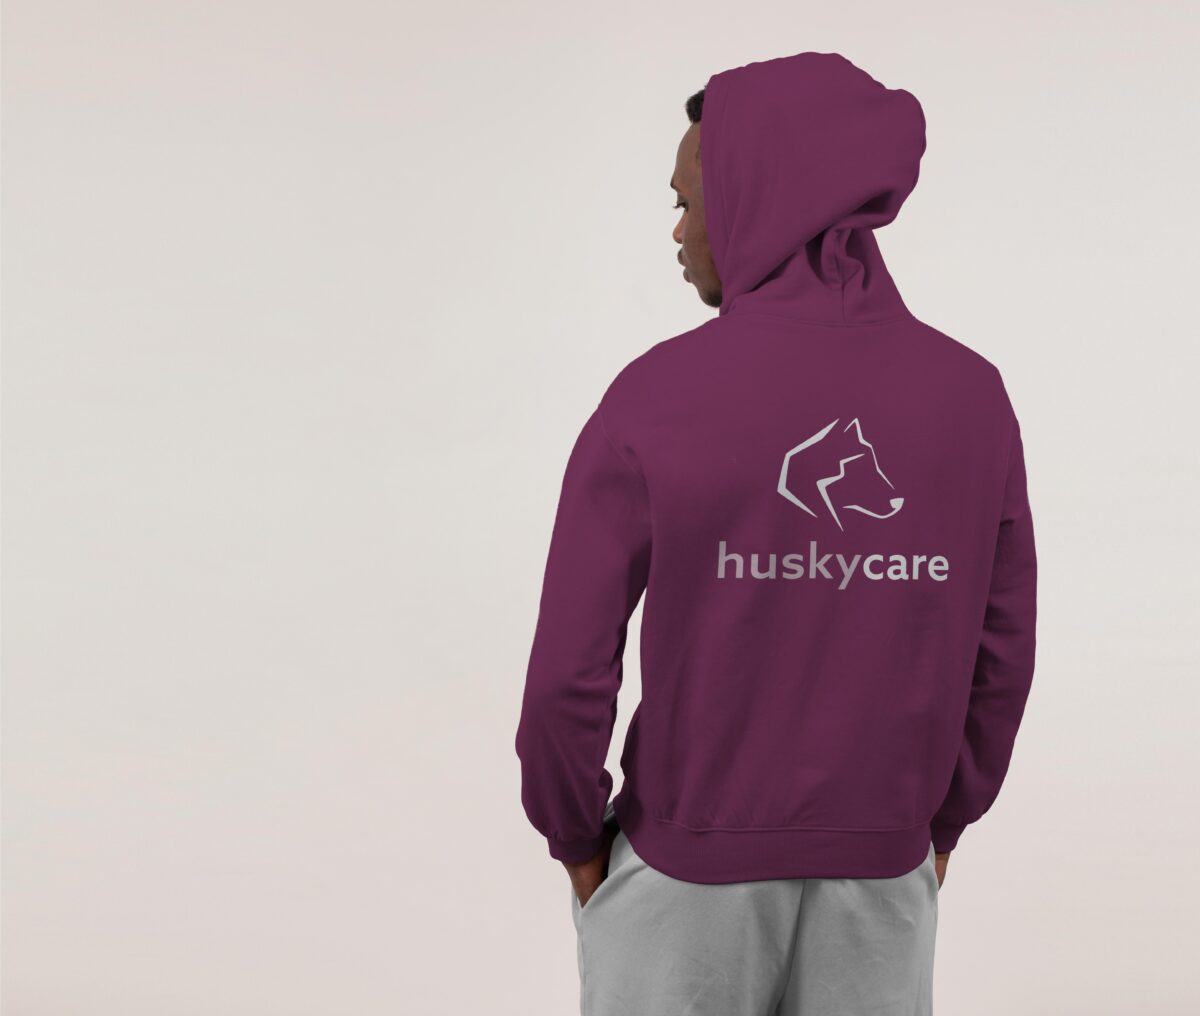 Hoodie mit dem Logo der Pflegemanagement-Software HuskyCare, das den abstrakten Kopf eines Huskys darstellt